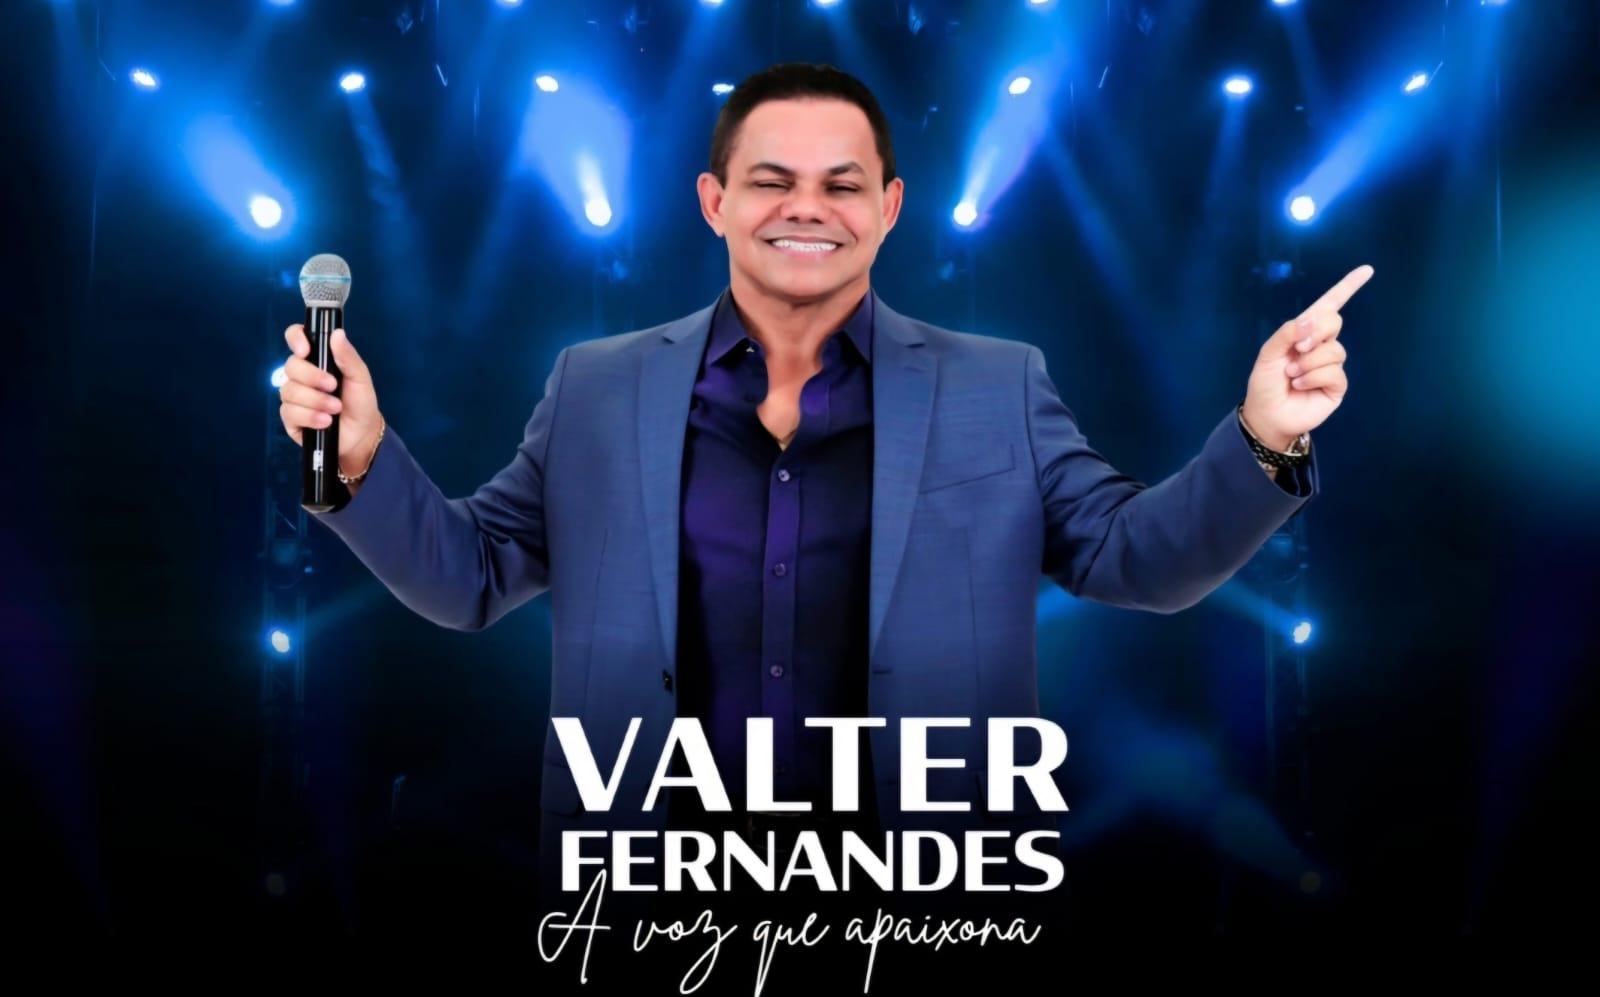 Valter Fernandes canta o amor arrebatador em “O Beijo”, sua nova aposta musical